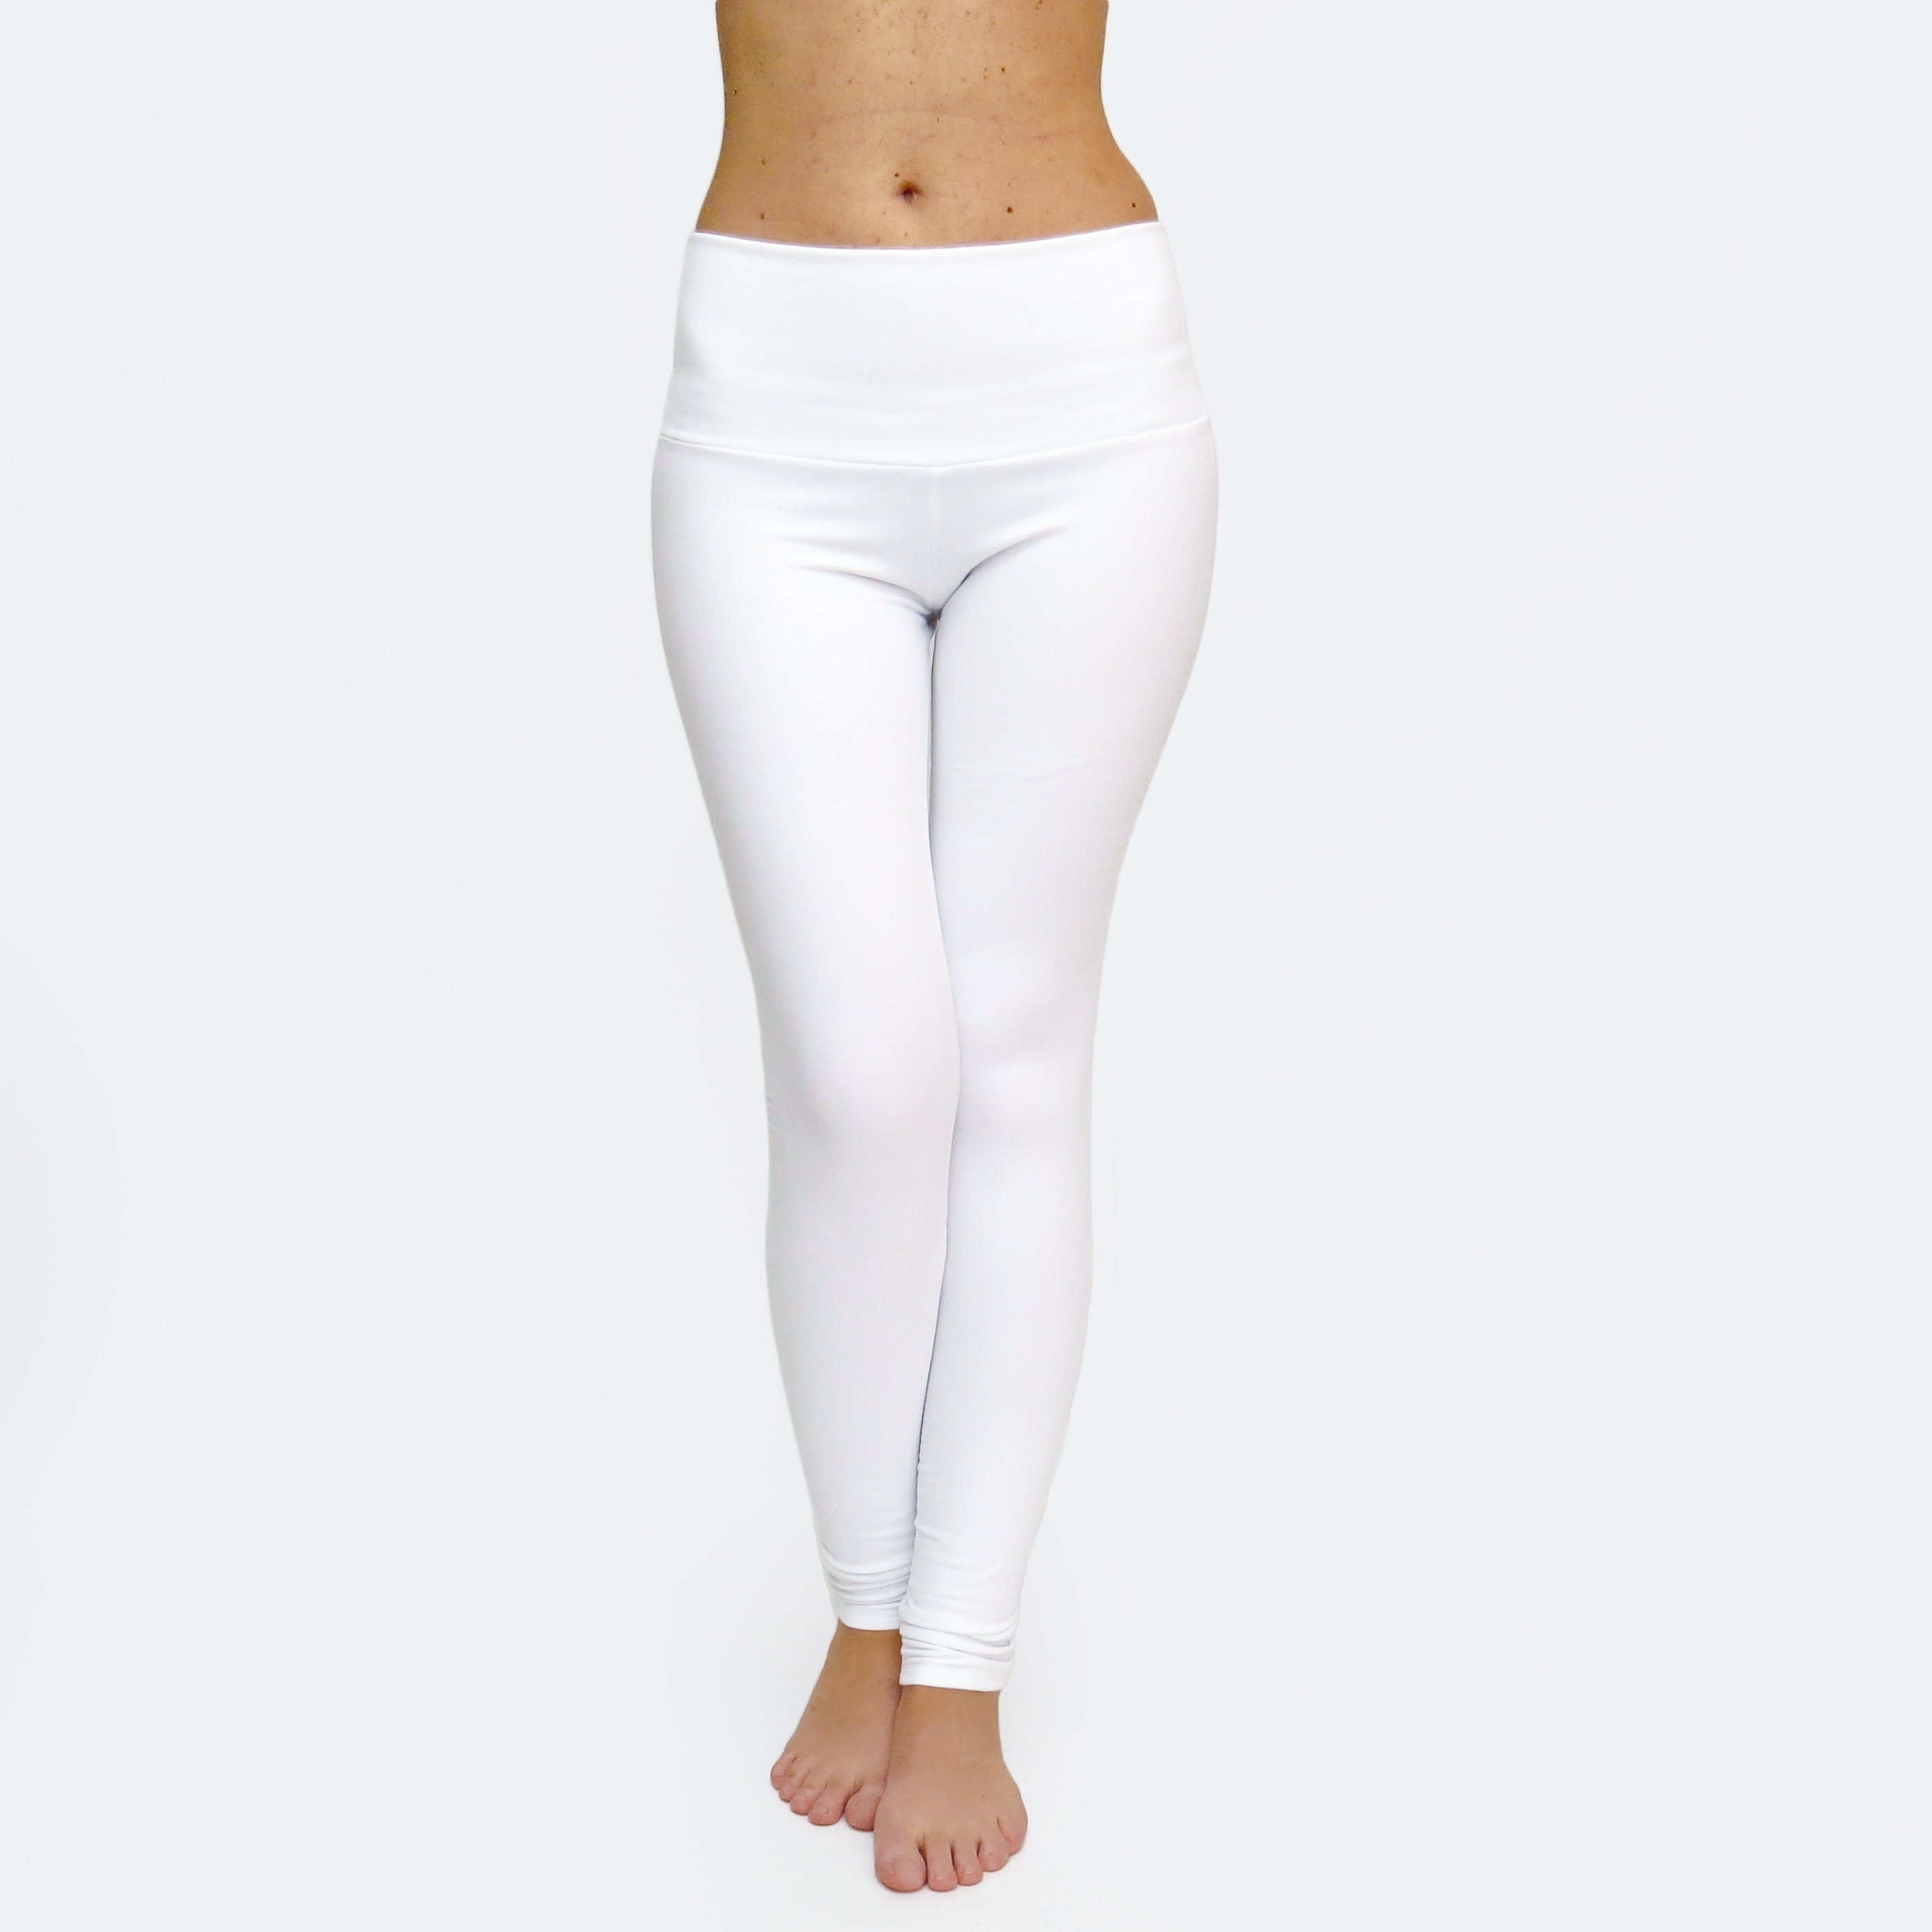 White Leggings / White Yoga Pants / Workout Tights / Yoga Clothes